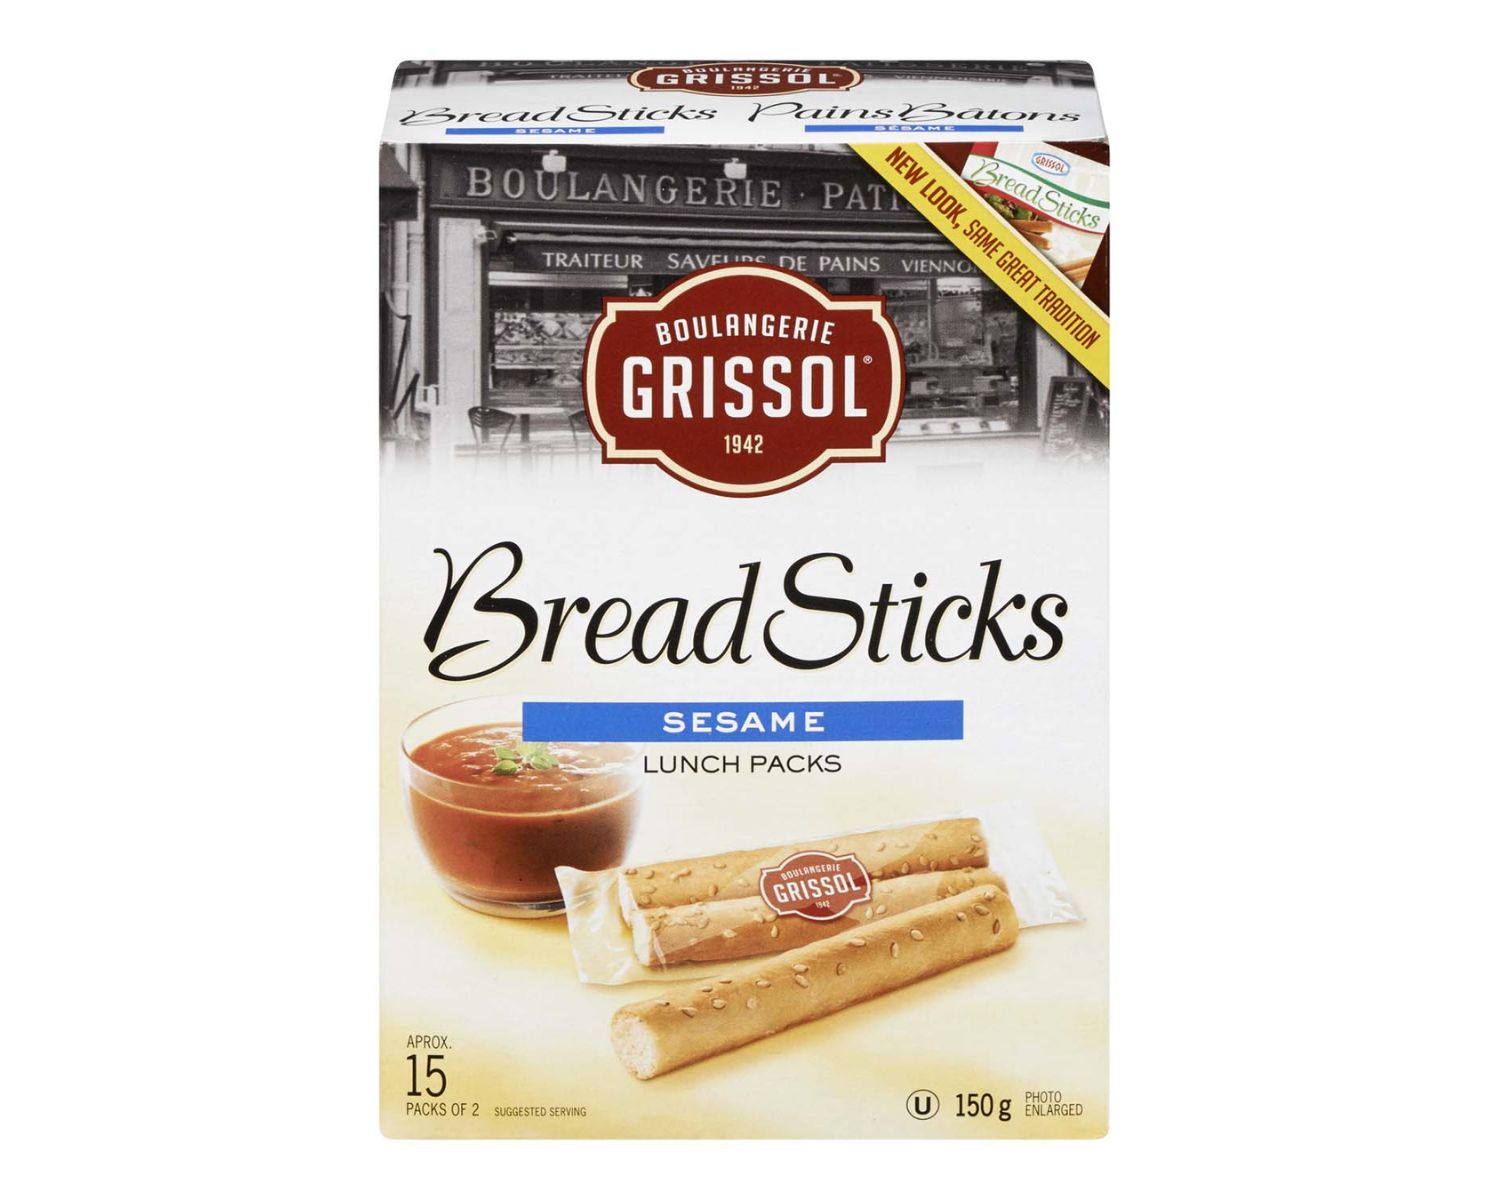 10-boulangerie-grissol-bread-sticks-nutrition-facts